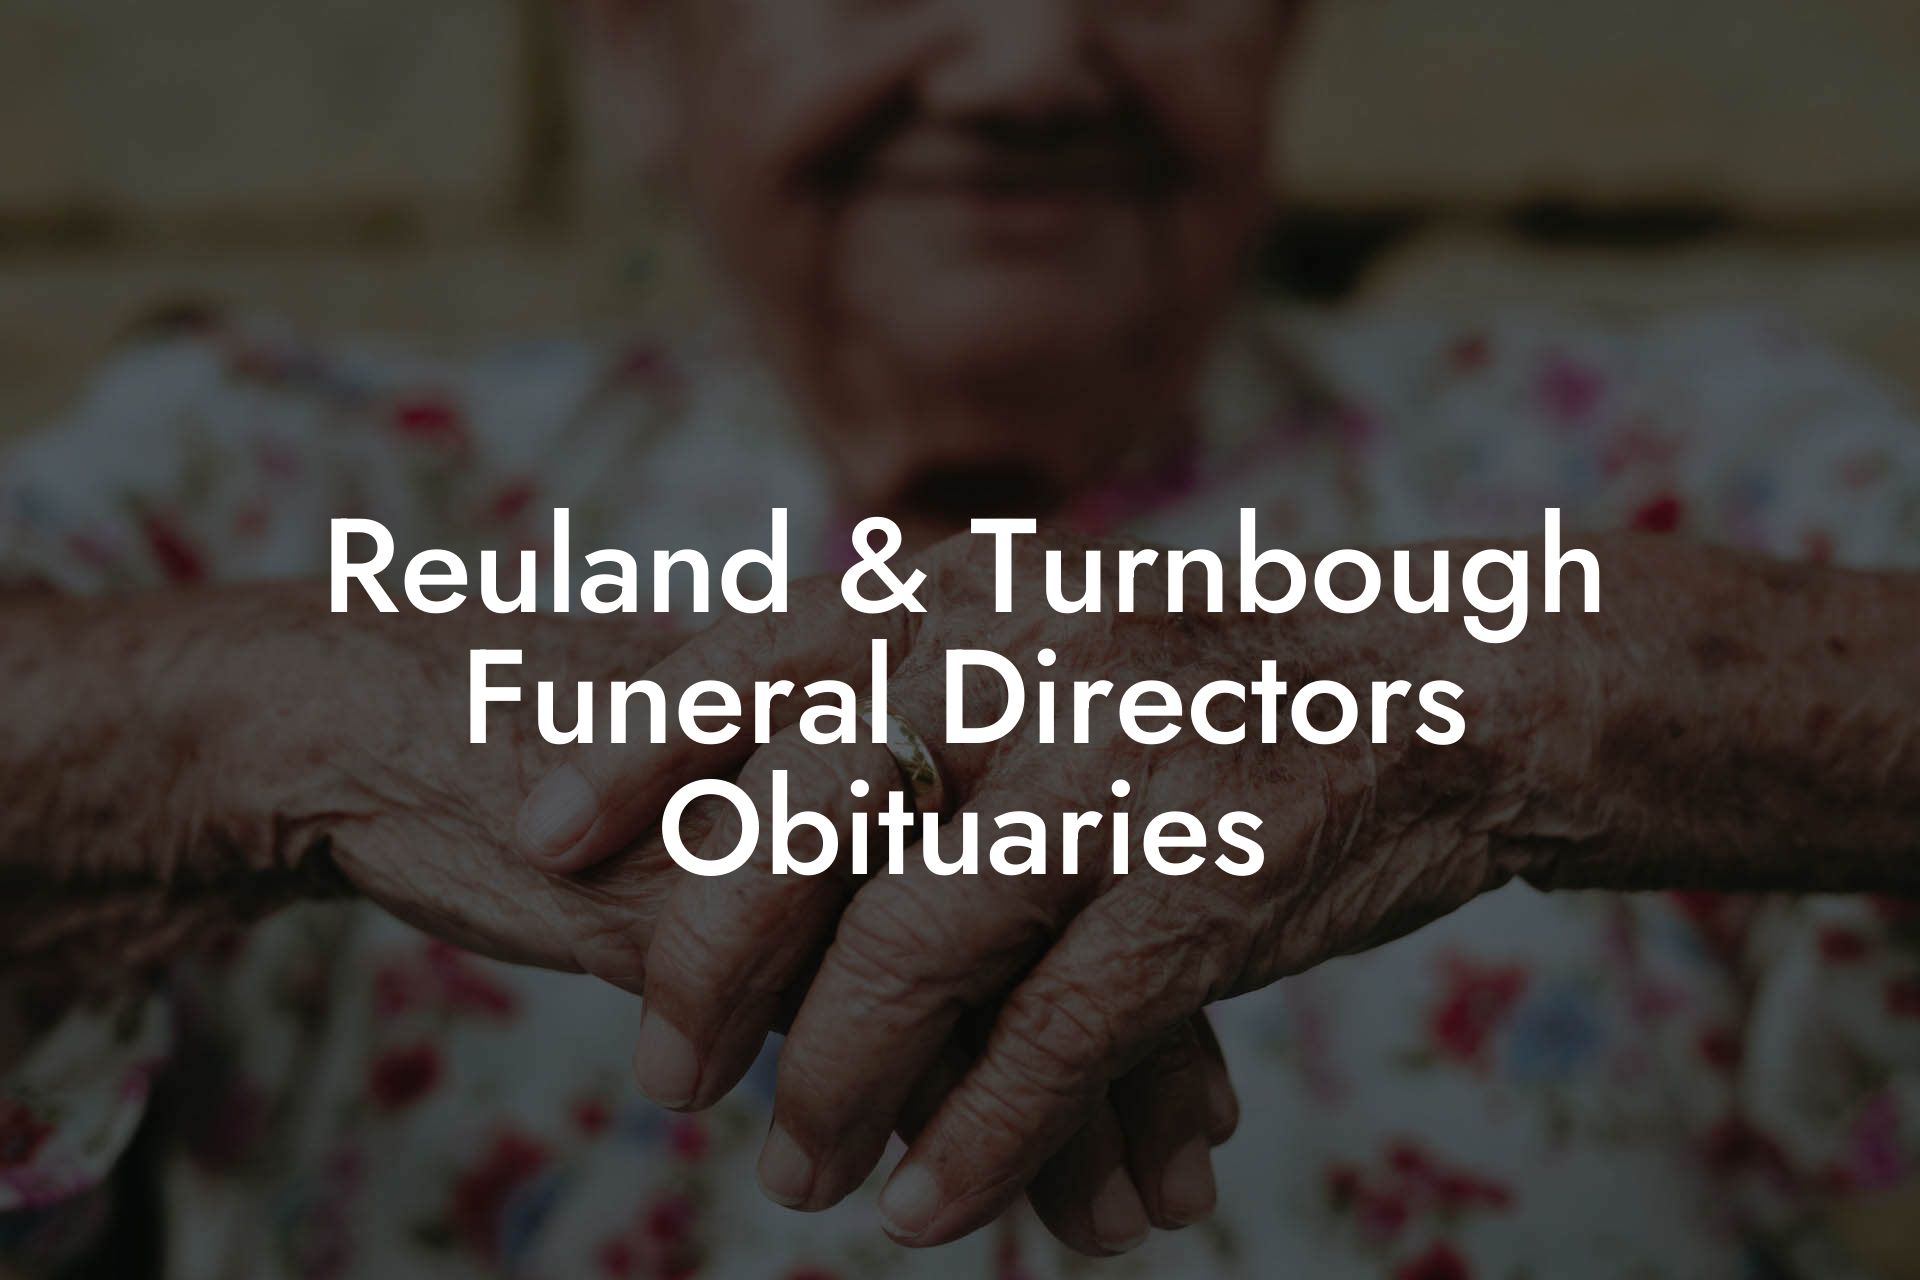 Reuland & Turnbough Funeral Directors Obituaries